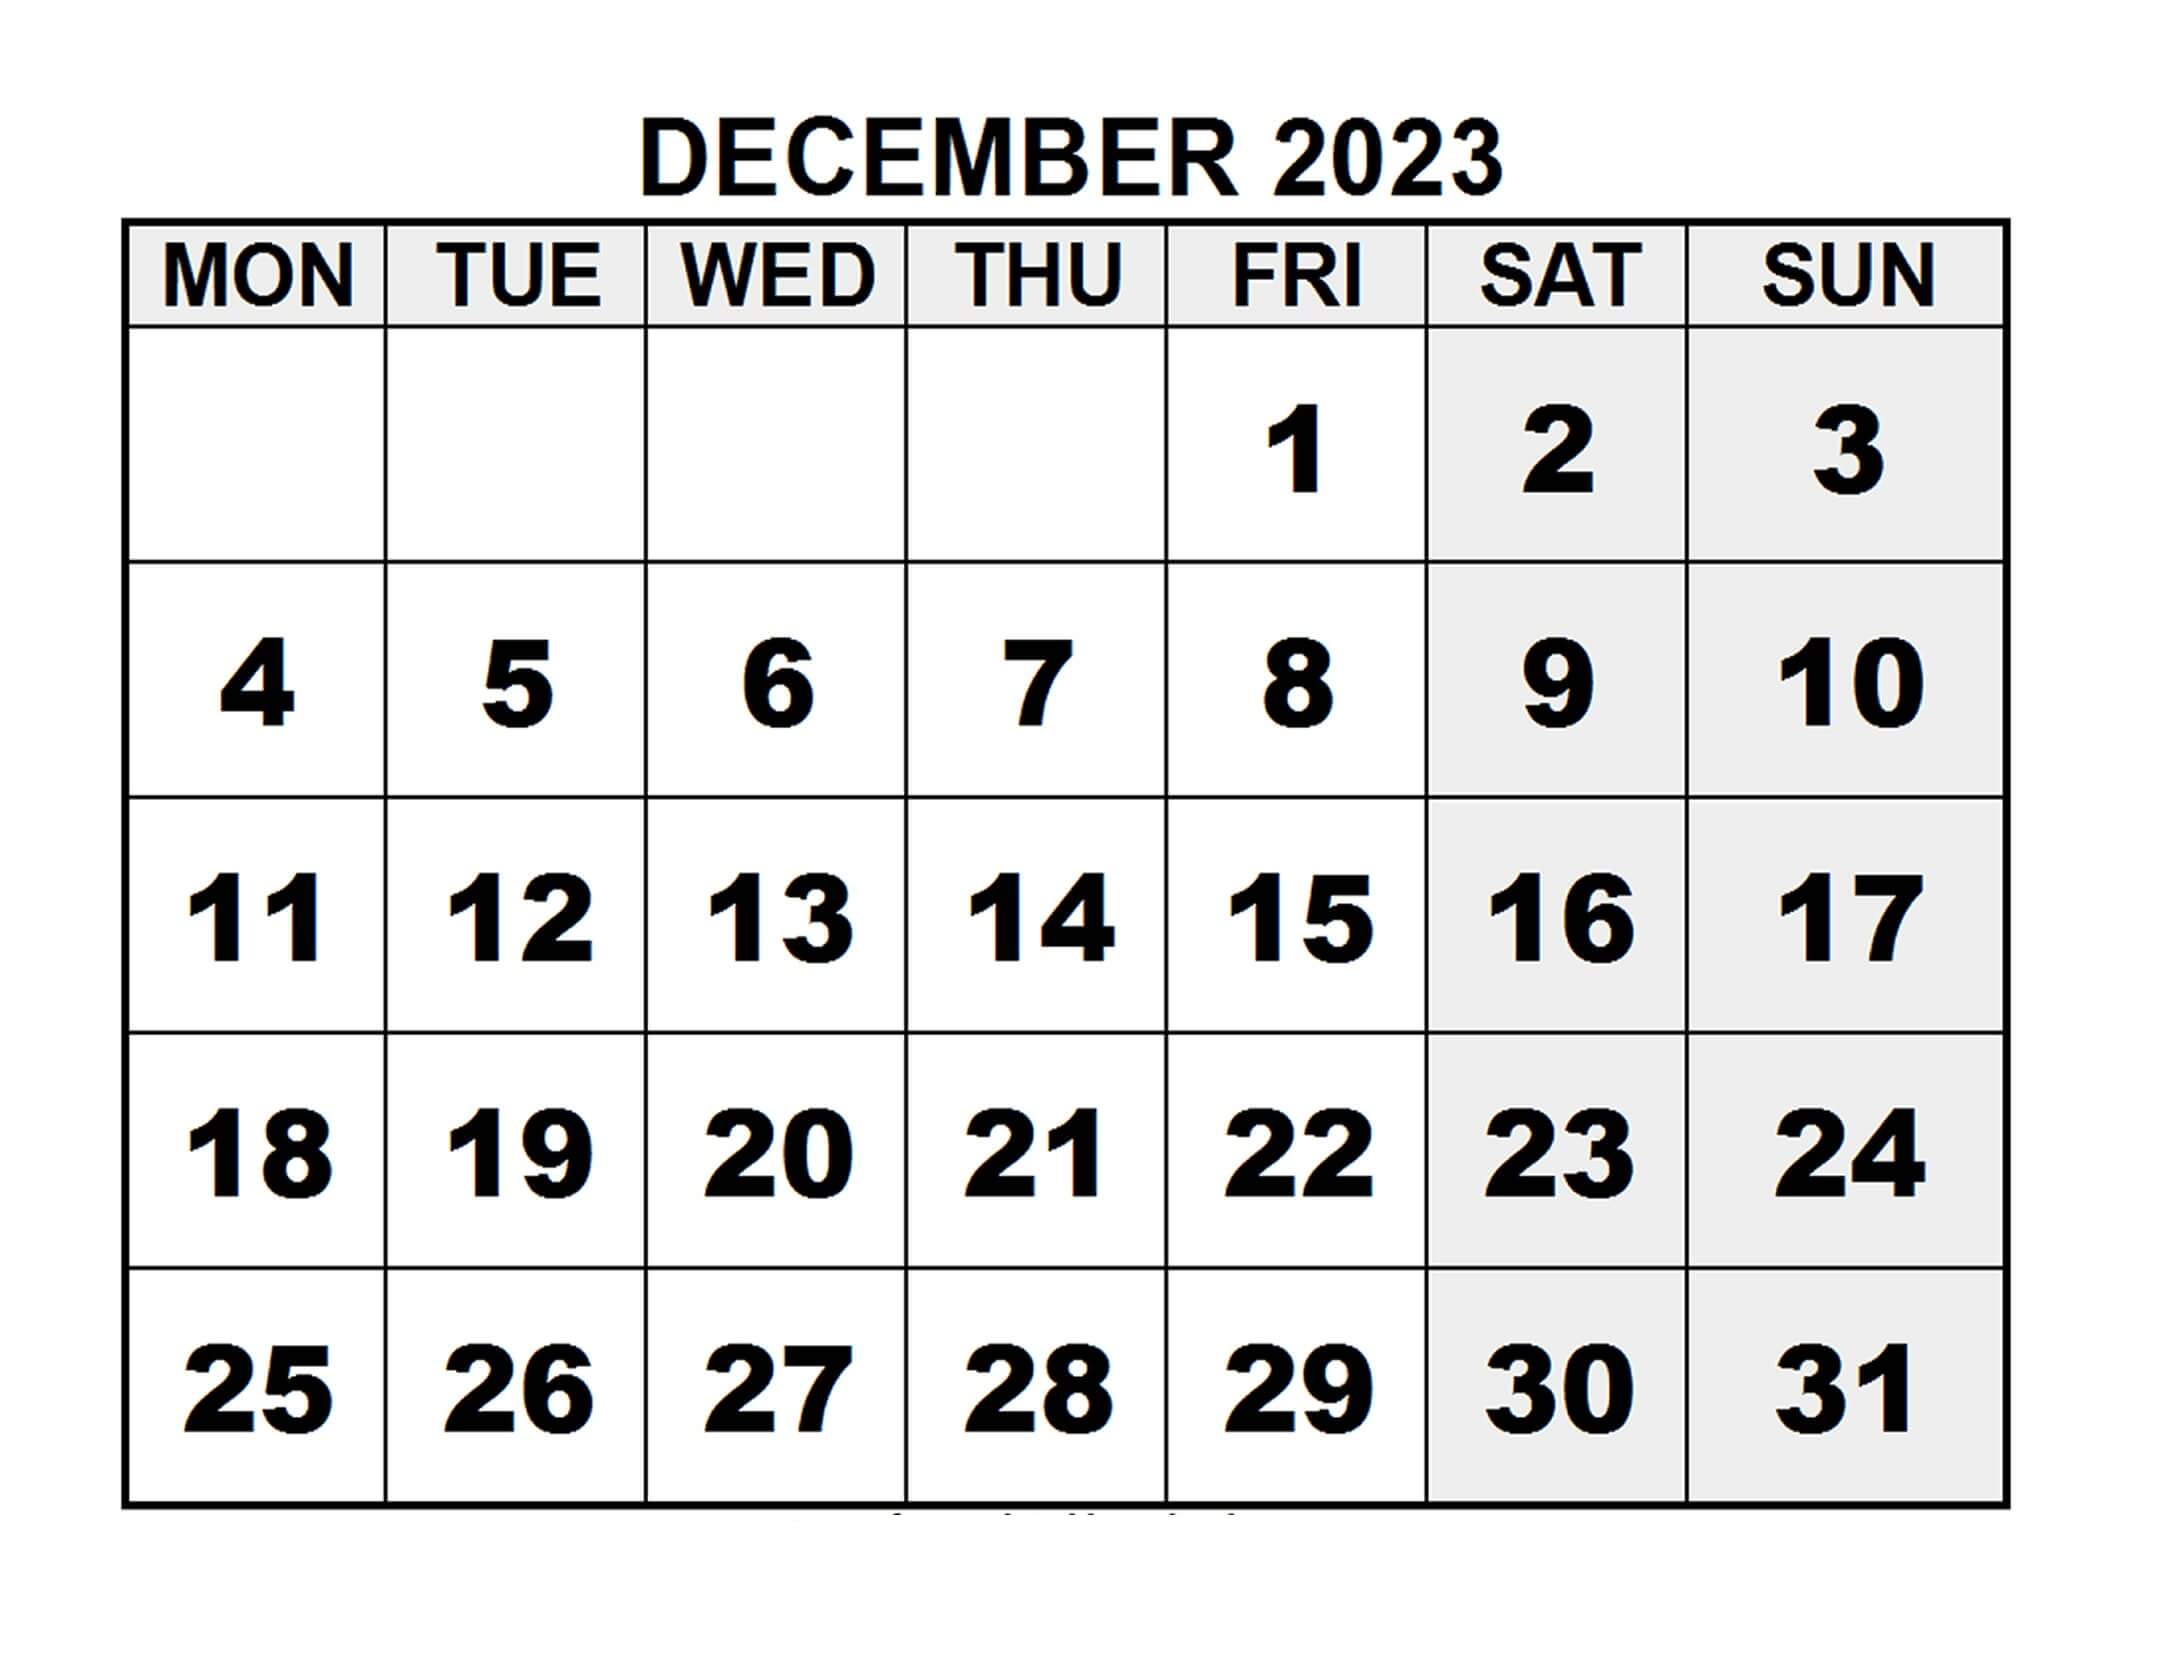 Print December 2023 Calendar A4 Size